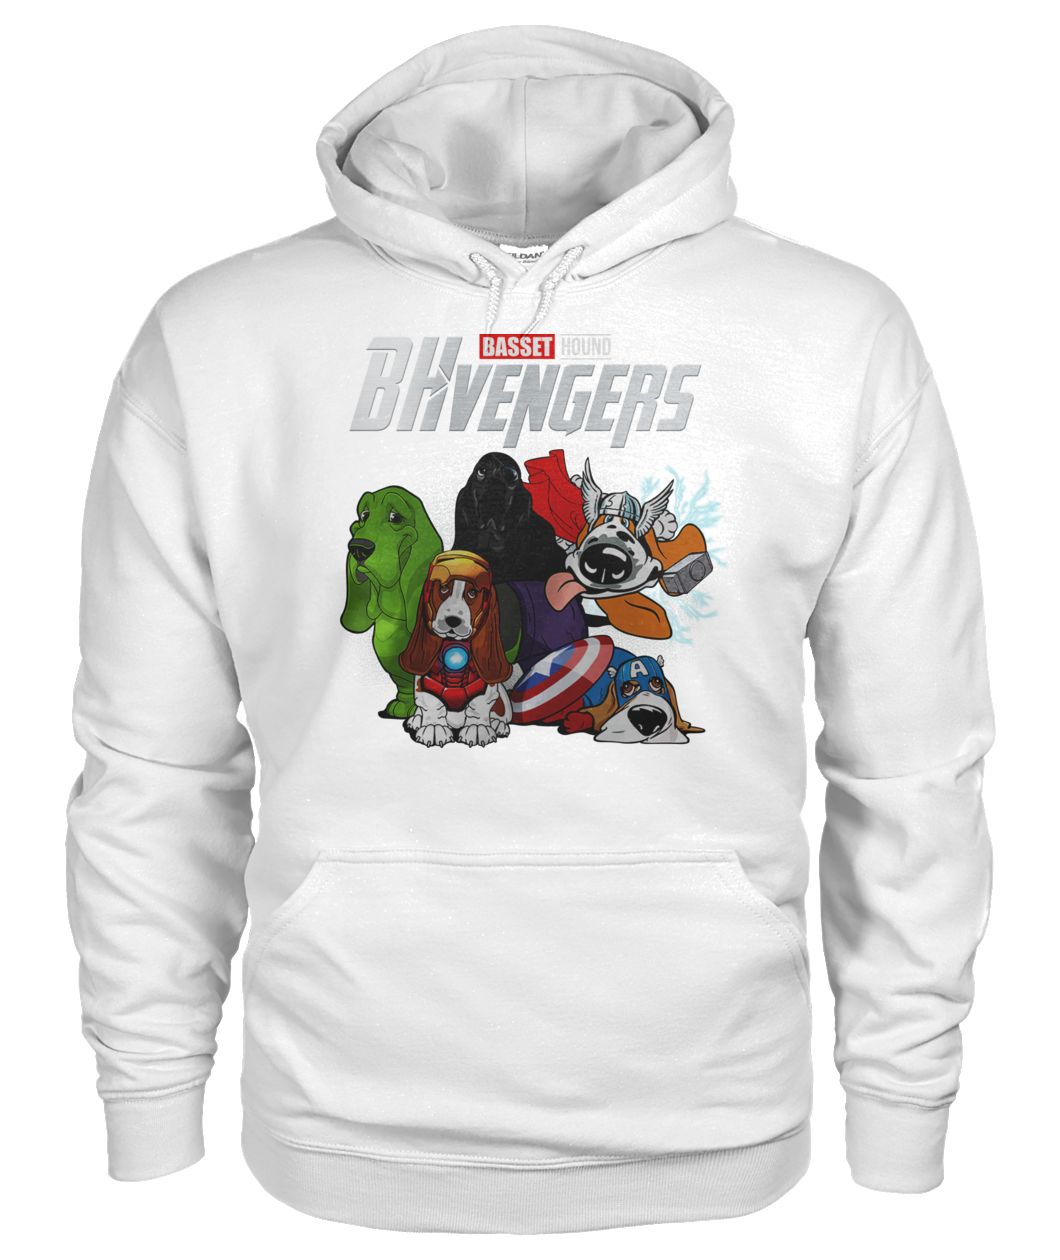 Marvel avengers endgame BHvengers basset hound gildan hoodie